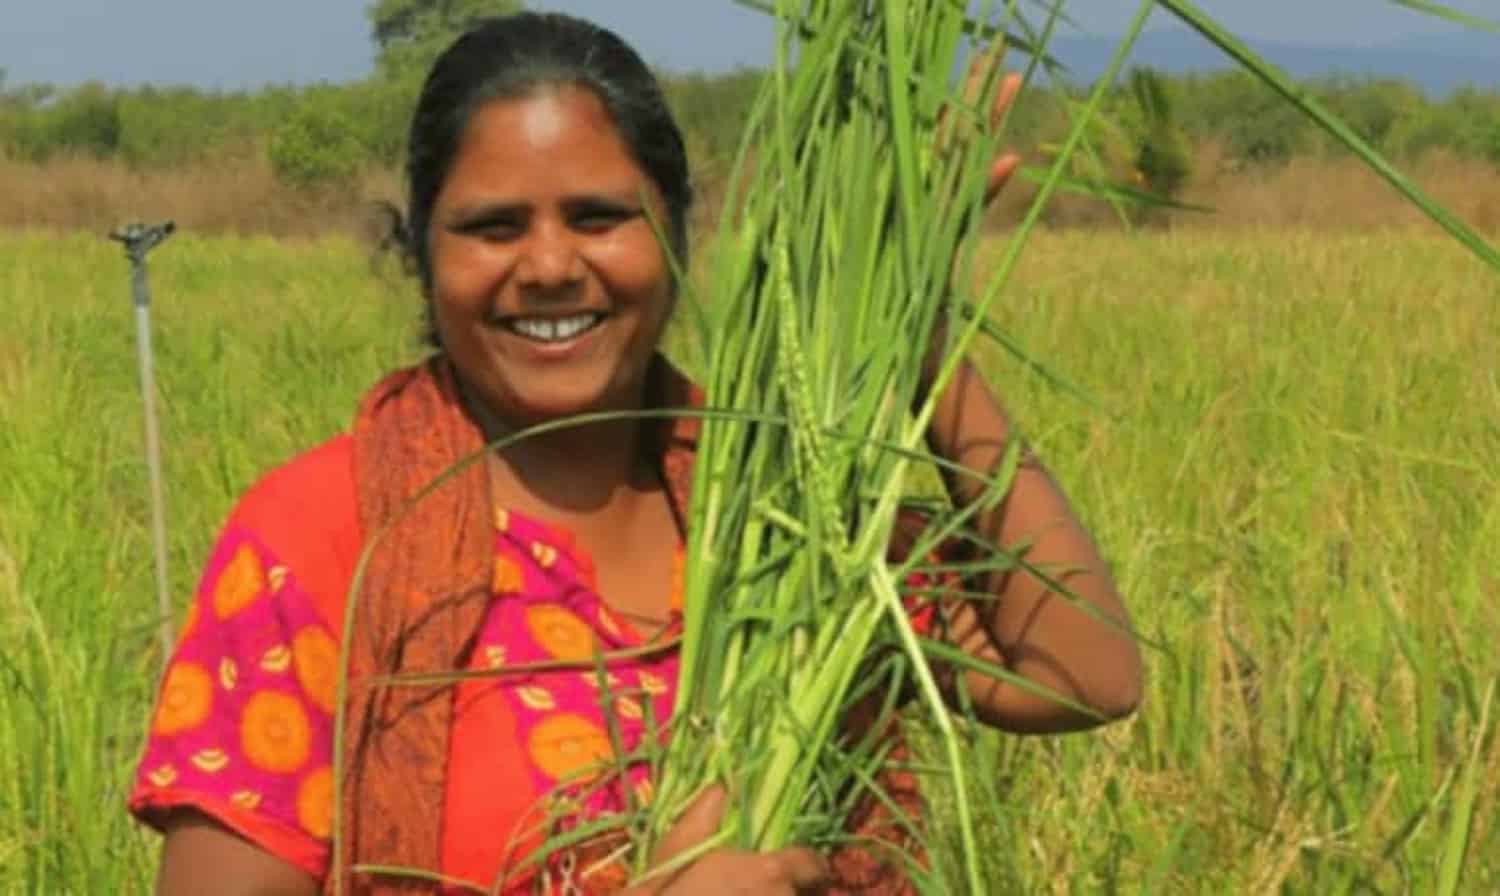 赢家再生有机农业种植前的农业生态学和奖学金2018年农业生态学增加女性的机会。